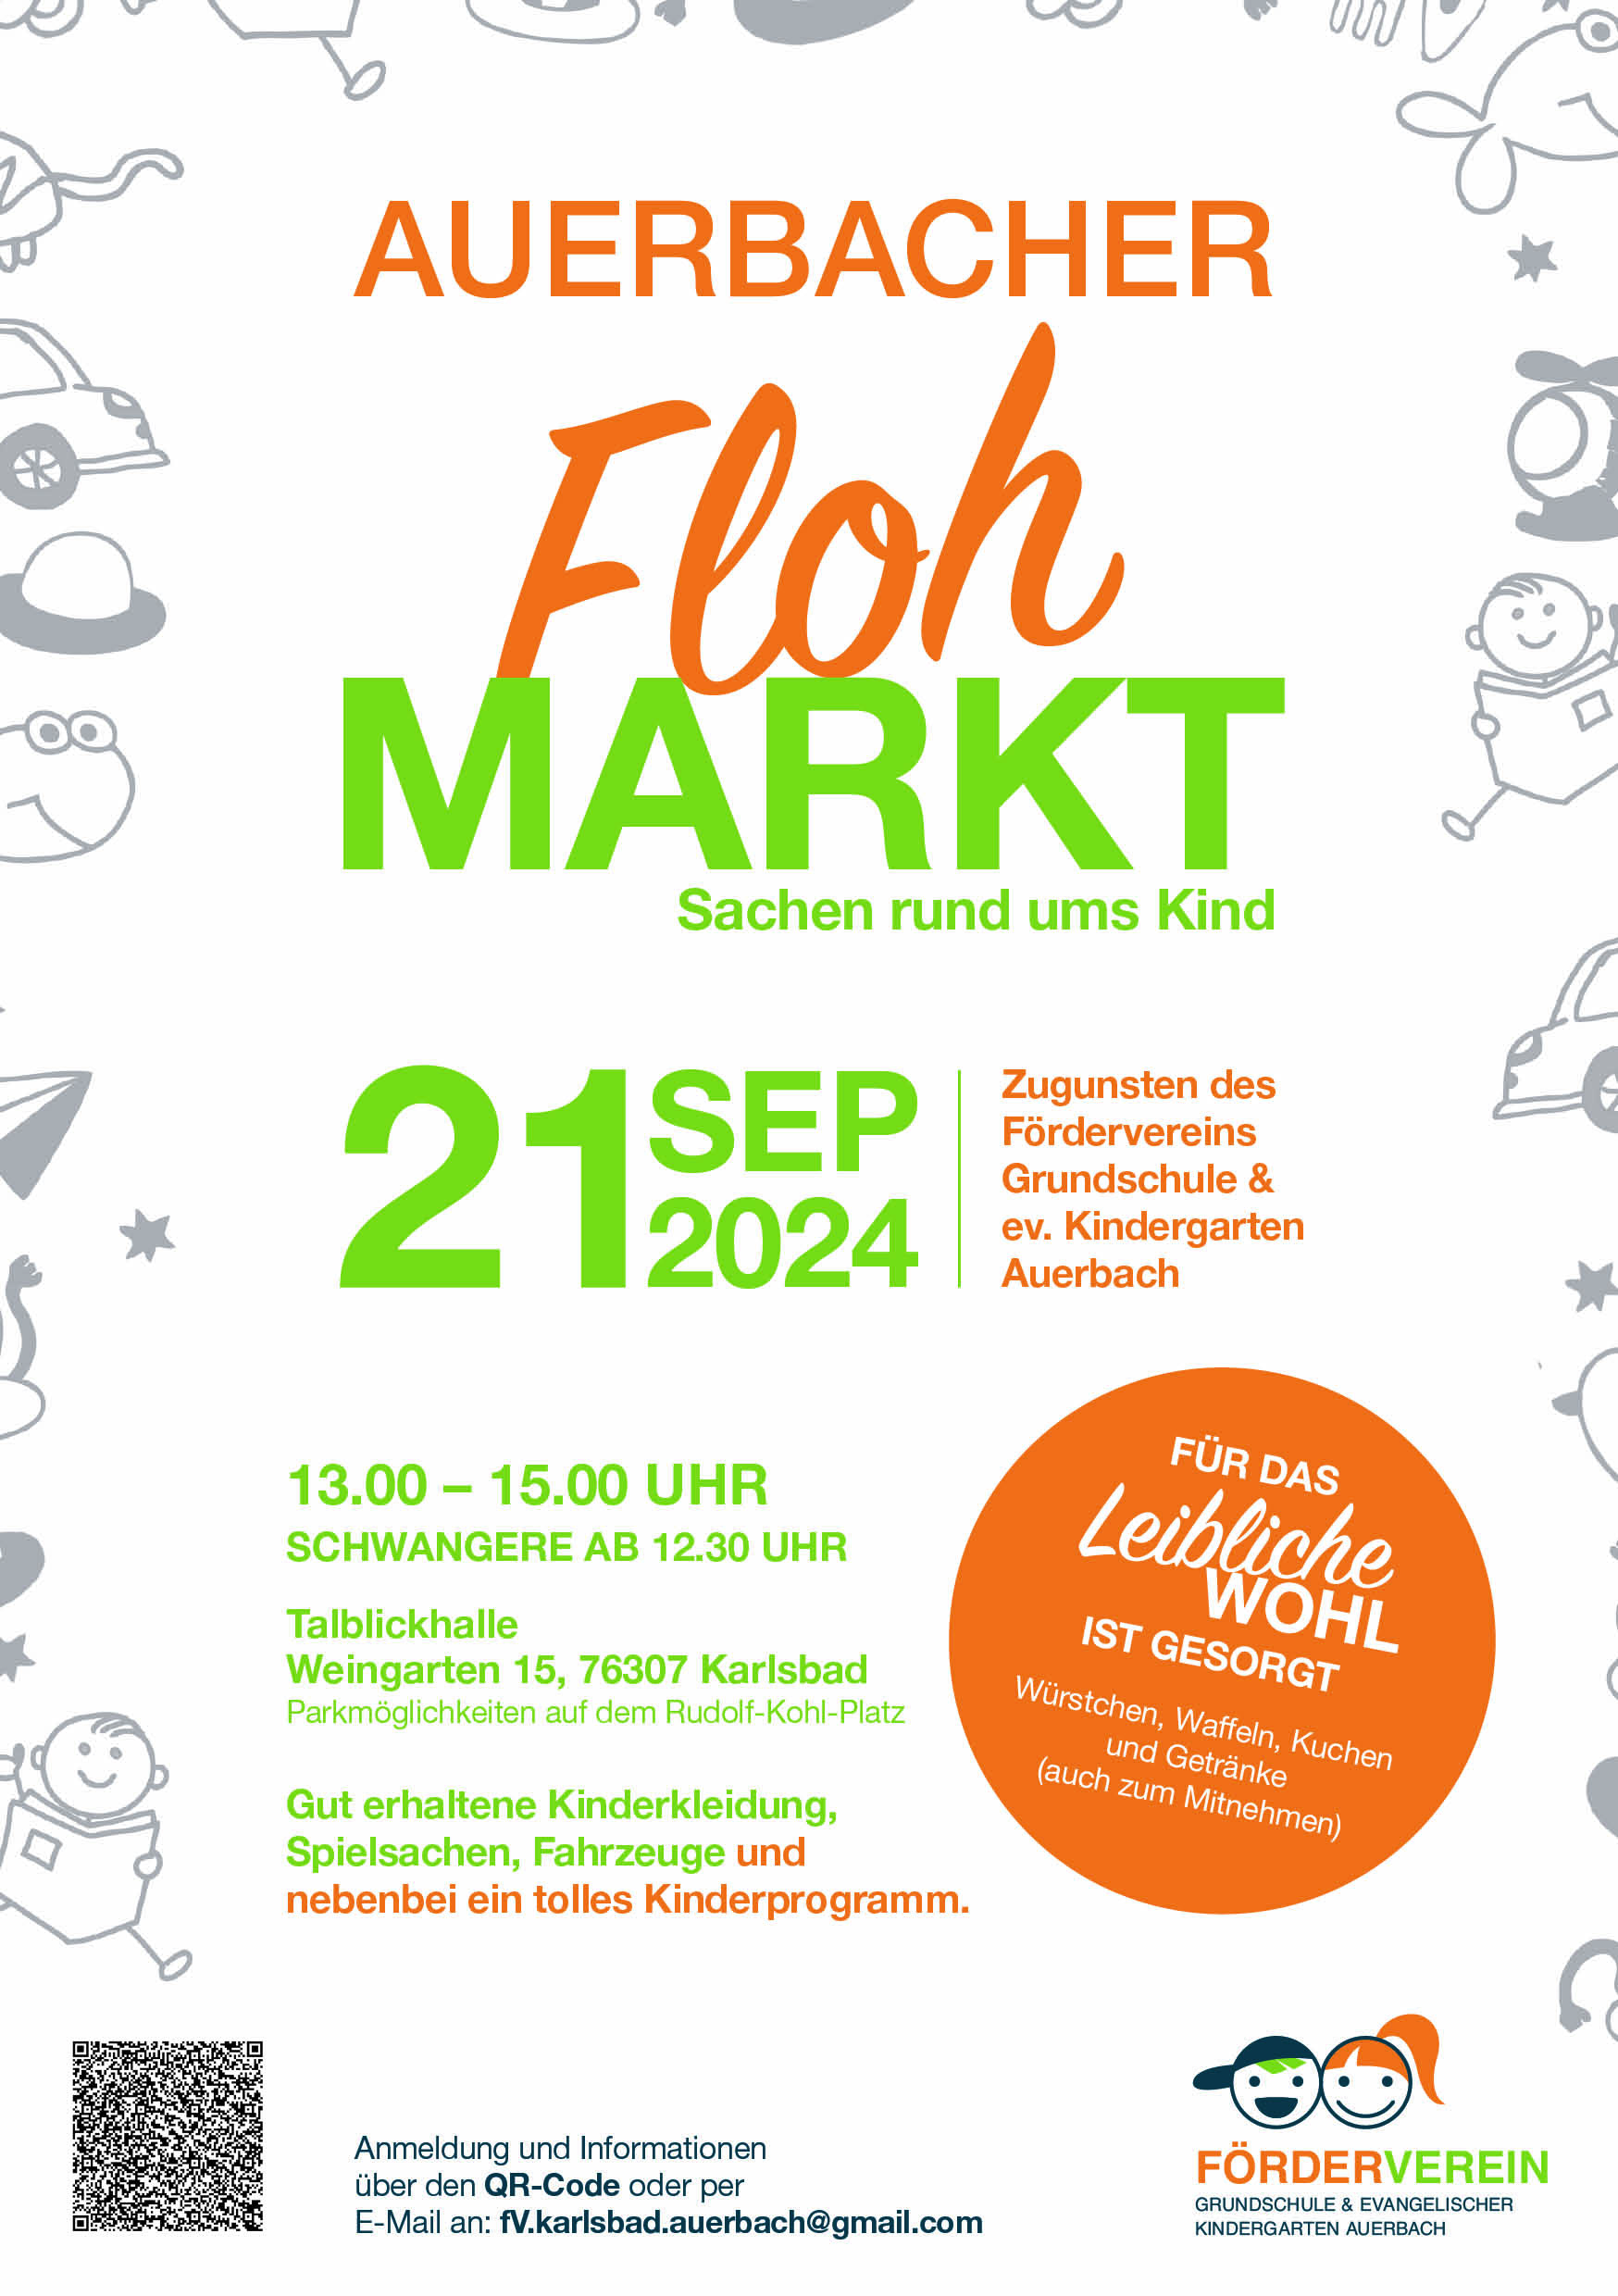 Auerbacher Flohmarkt „Sachen rund ums Kind“ | Karlsbad